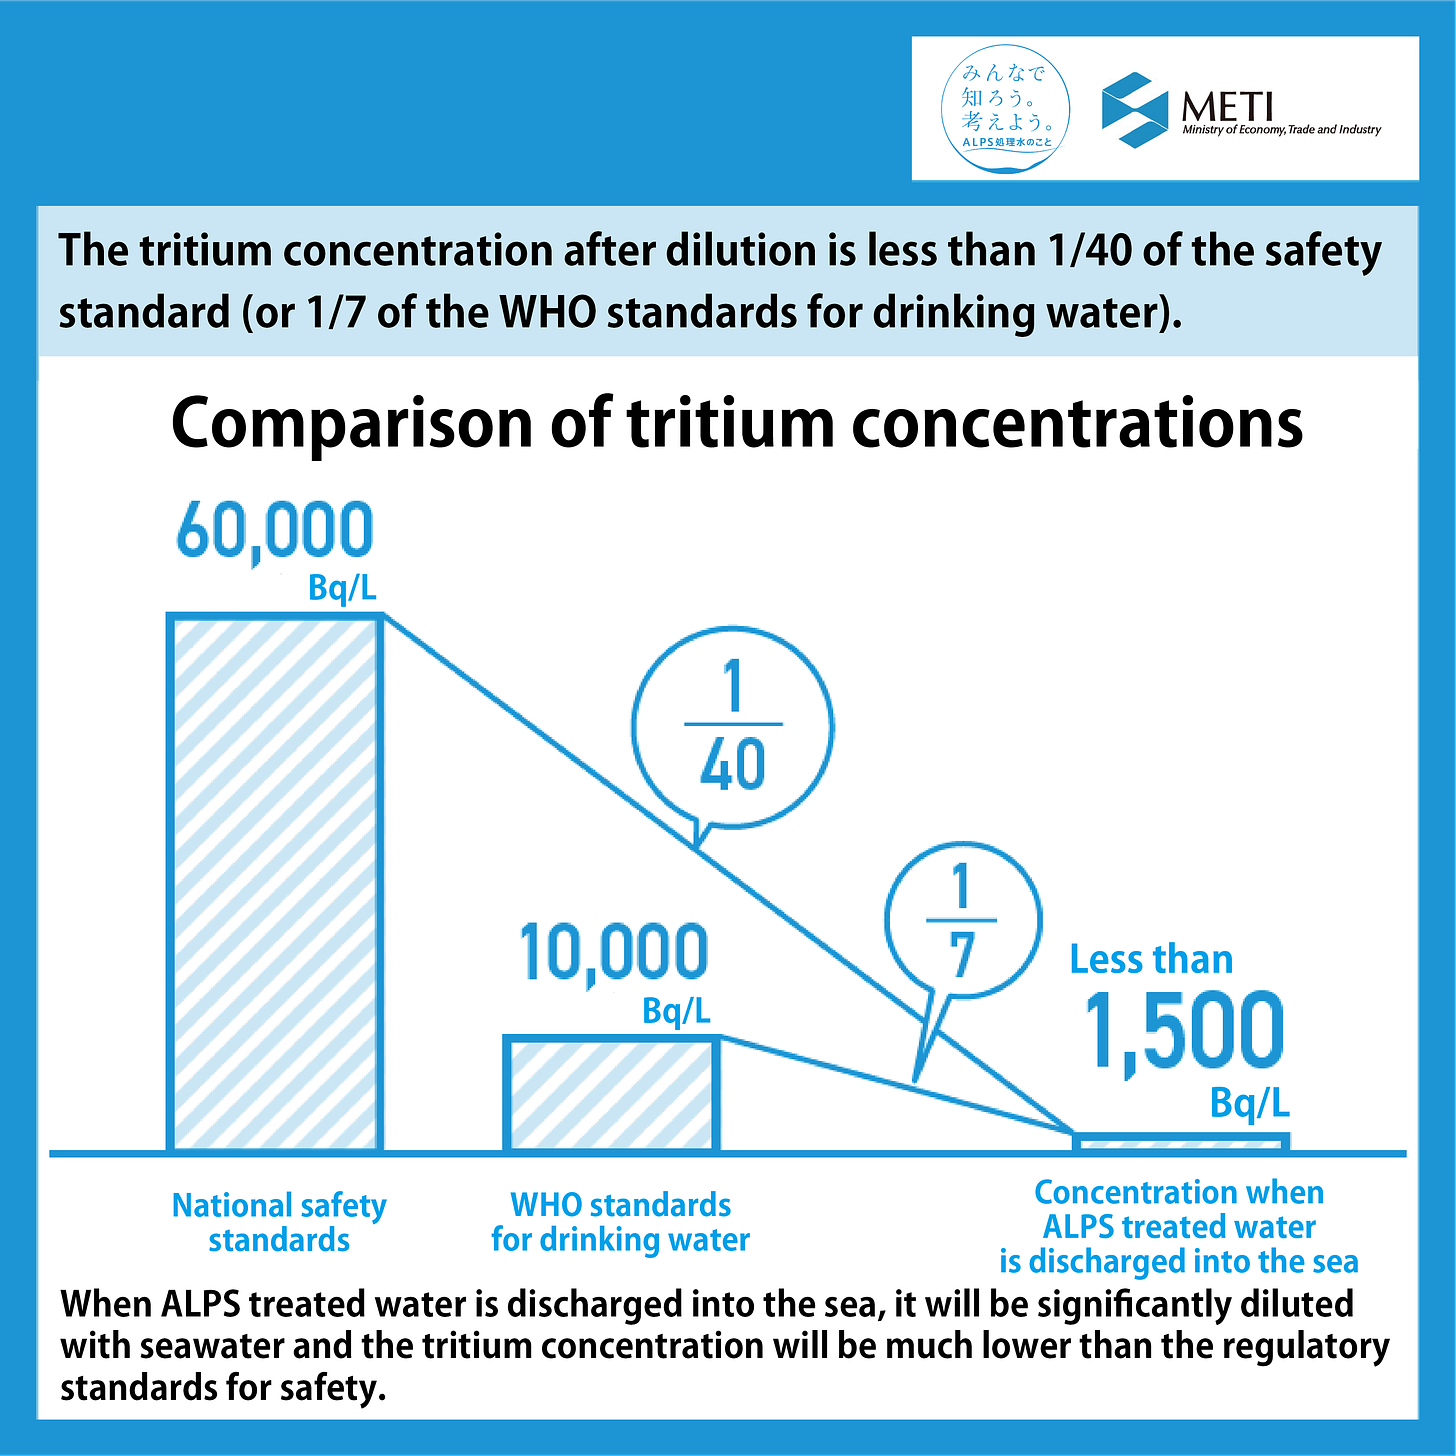 Comparison of tritium concentrations